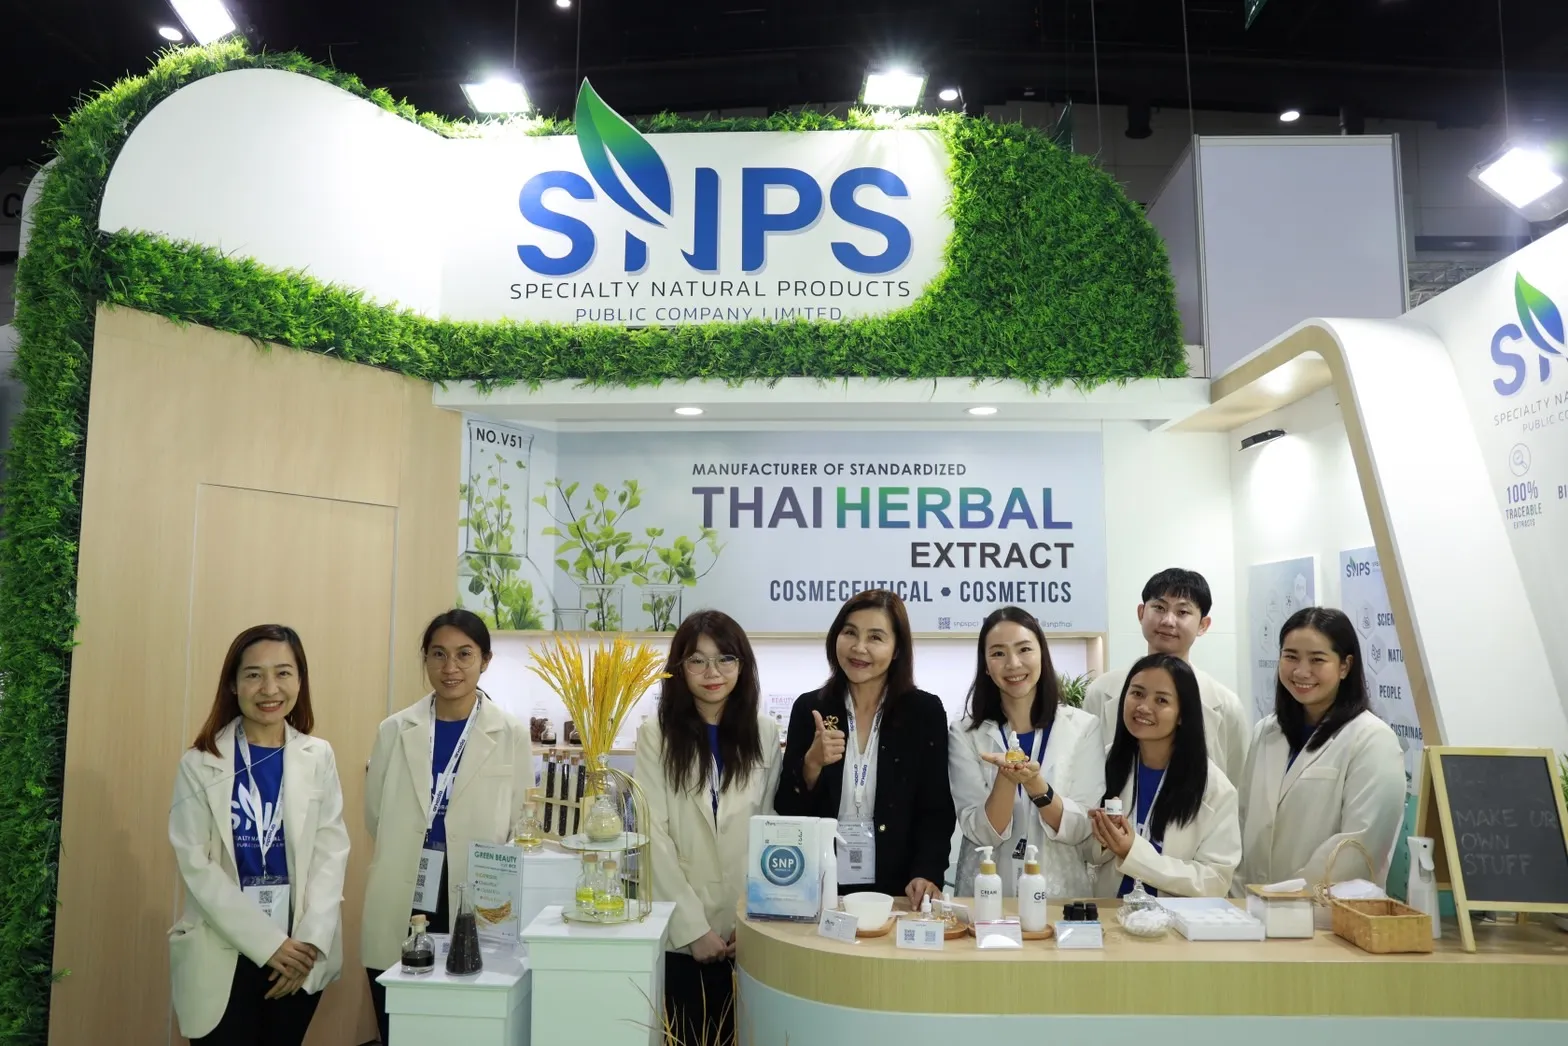 เชิญพบกับ Specialty Natural Products Pub.Co.Ltd. (SNPS) กันที่งาน IN COSMETICS ASIA